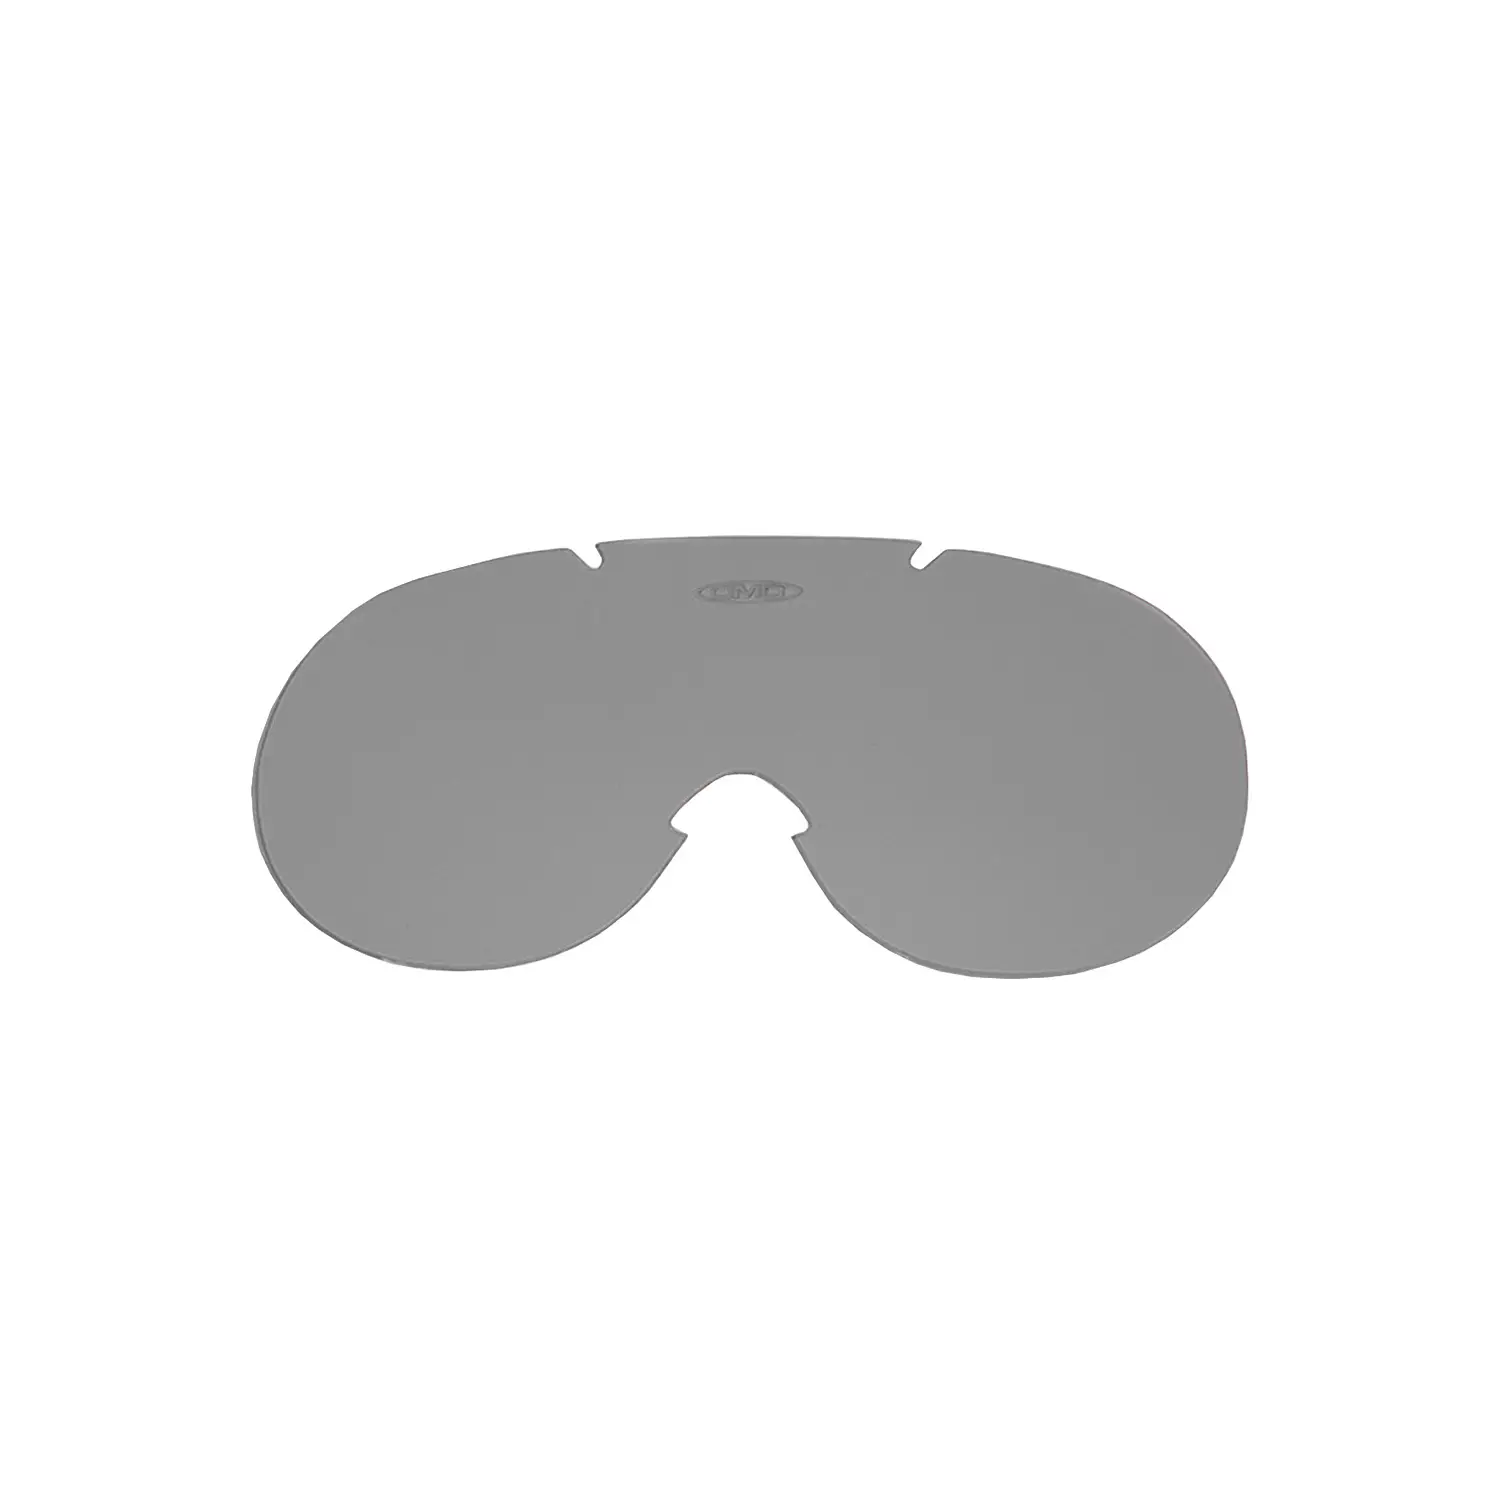 dmd.eu - LENTE RICAMBIO GHOST DMD – accessory smoke lens